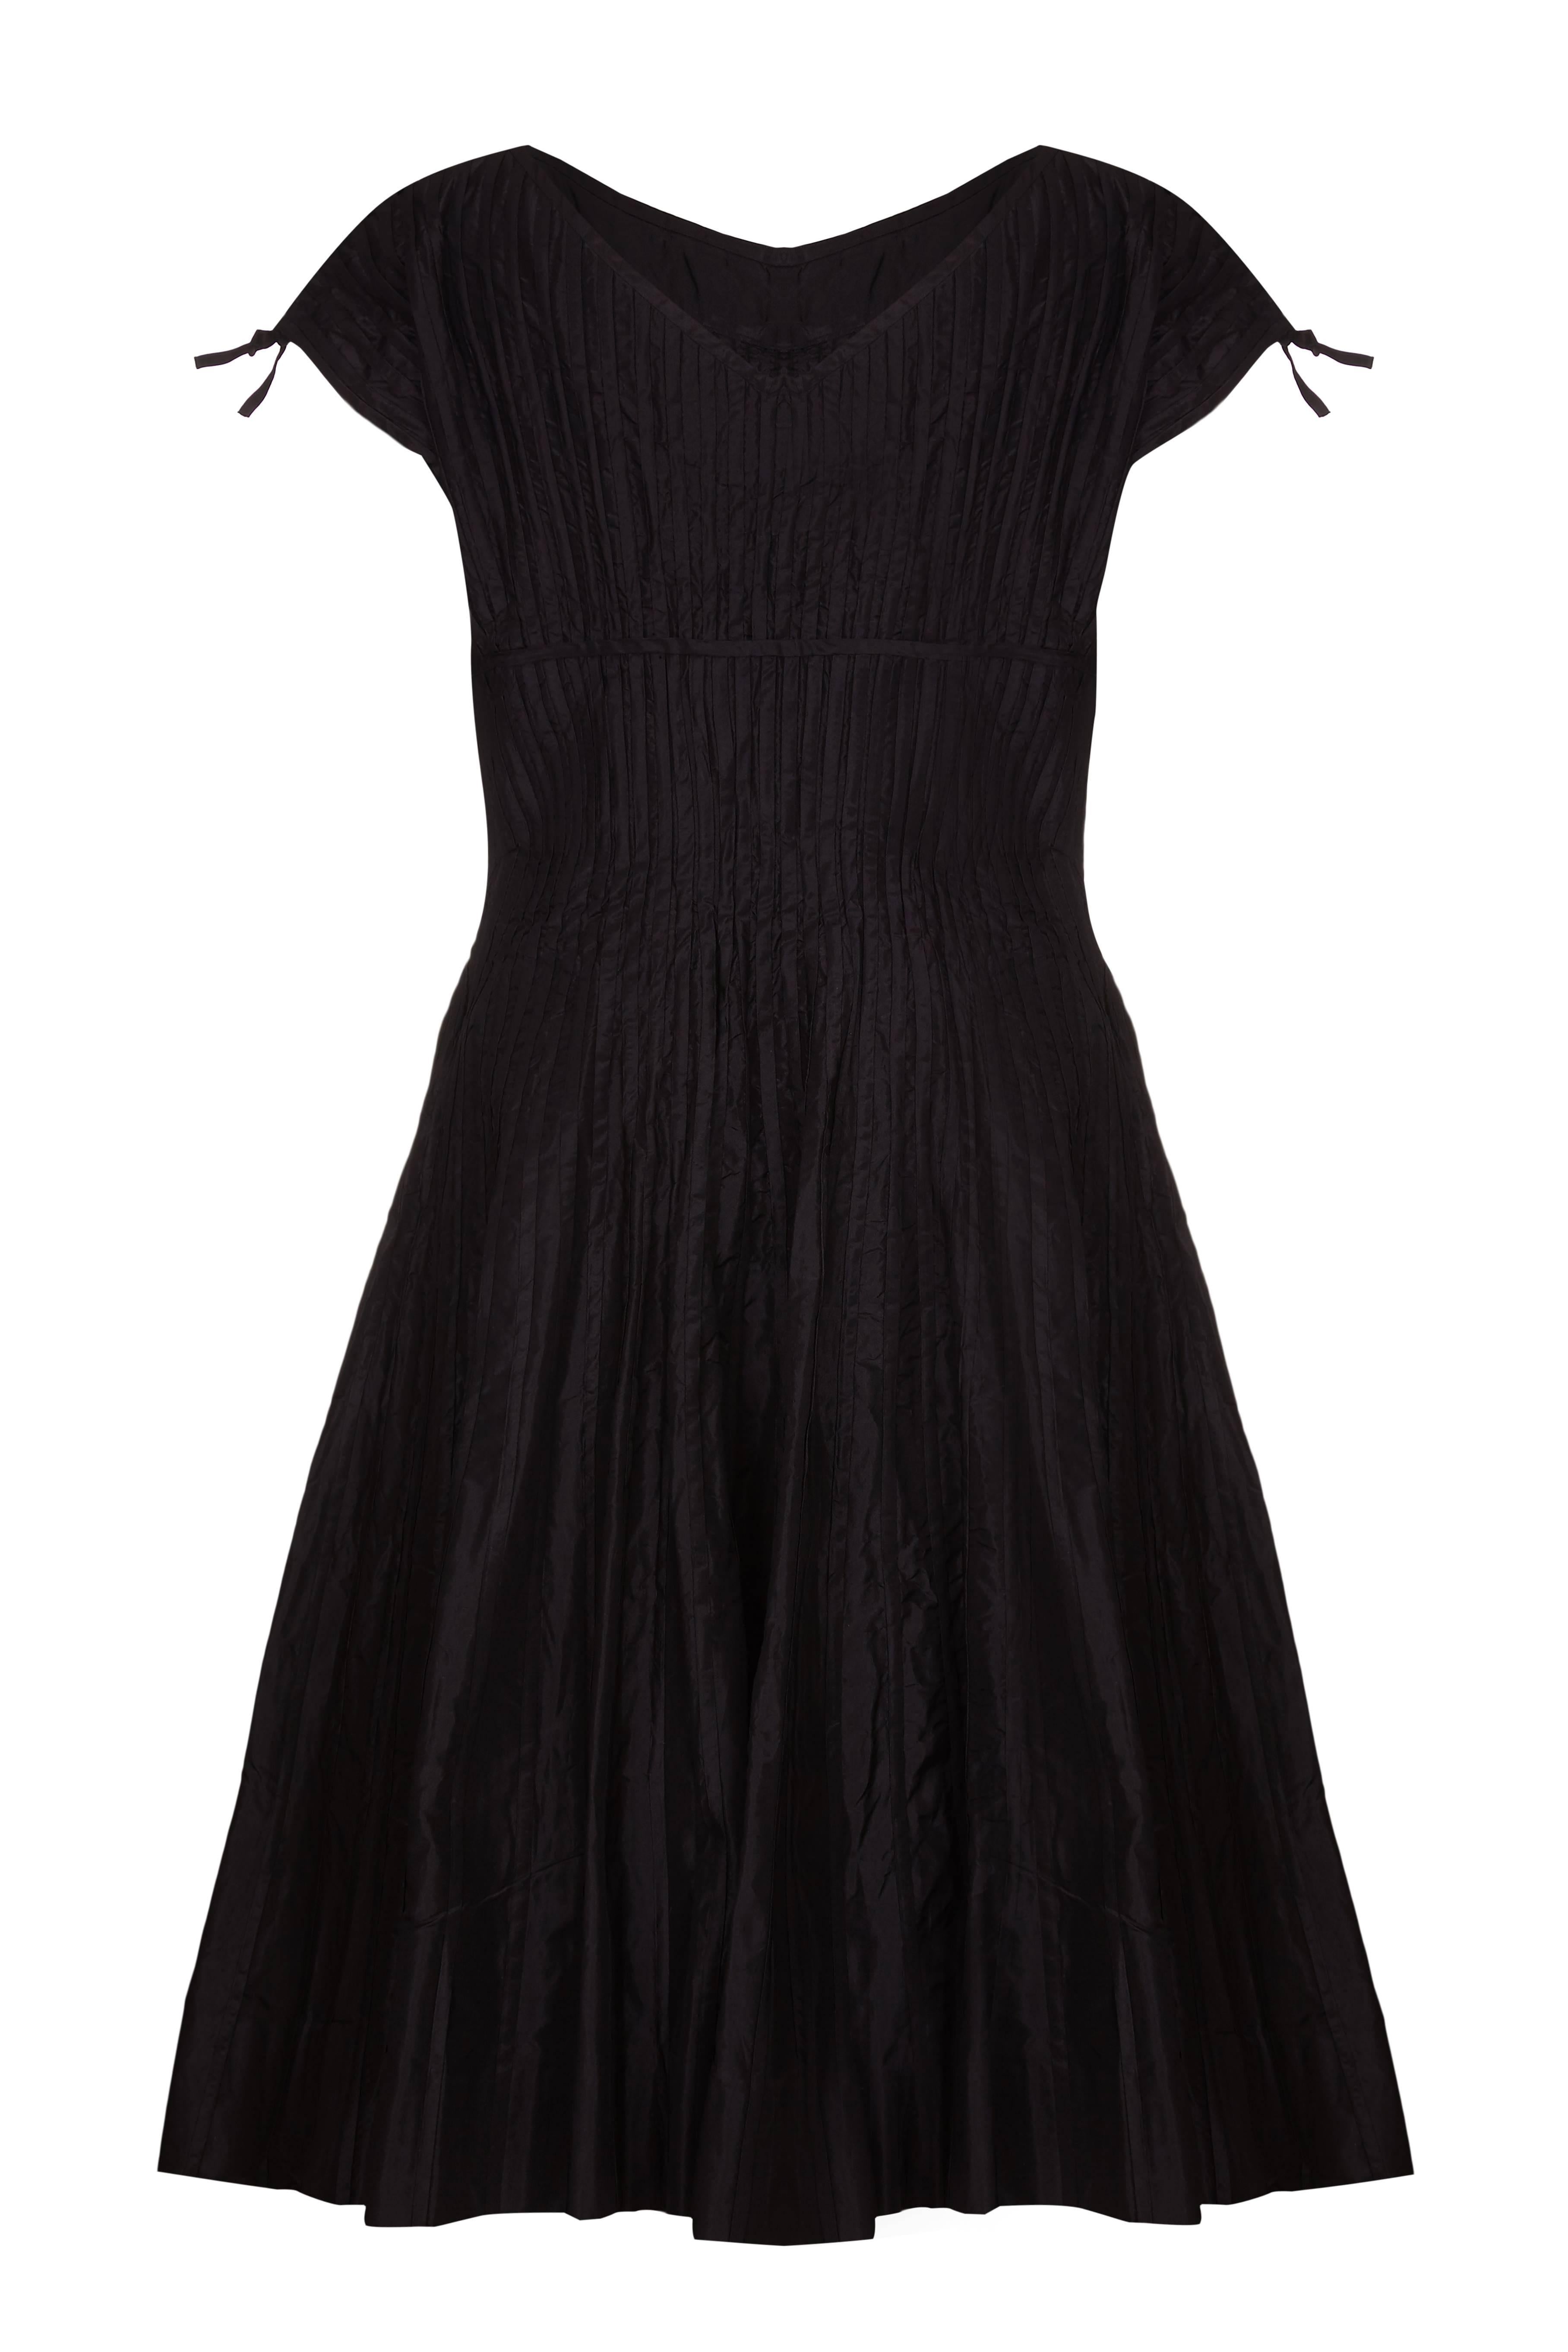 Dieses wunderschöne schwarze Seidenkleid aus den frühen 1950er Jahren stammt wahrscheinlich von Omar Kiam für den Designer Ben Reig, eine Marke, die in dieser Zeit für ihre schlichten, eleganten Linien und die luxuriöse Qualität der Stoffe bekannt